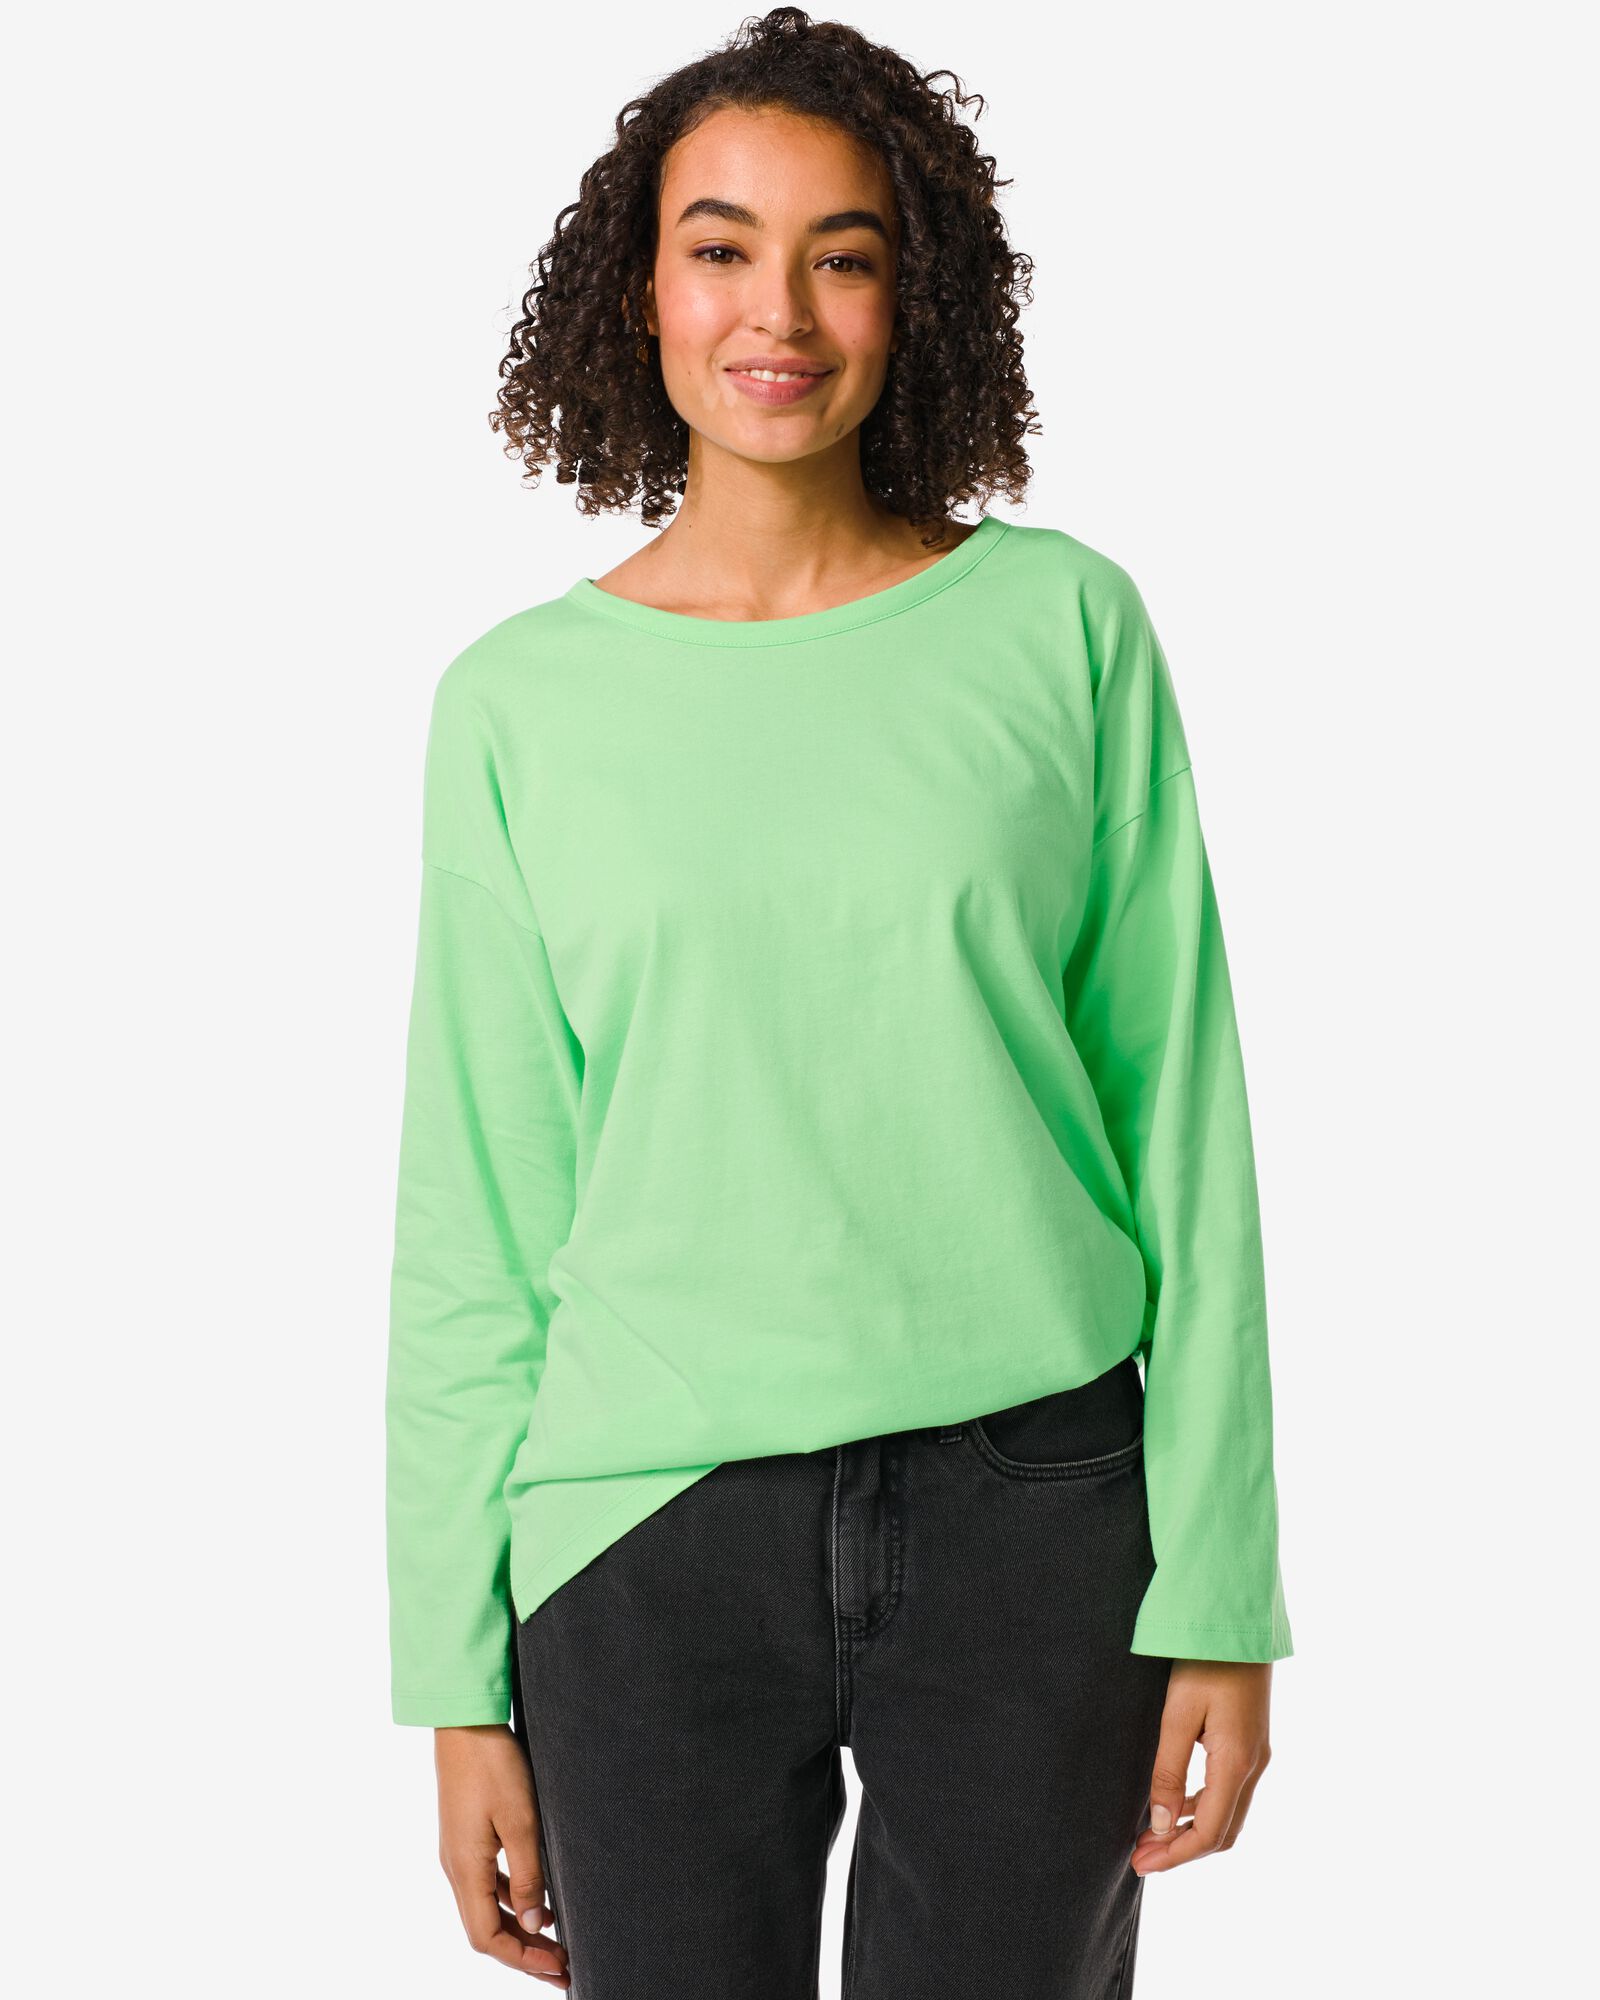 Image of HEMA Dames T-shirt Daisy Groen (groen)